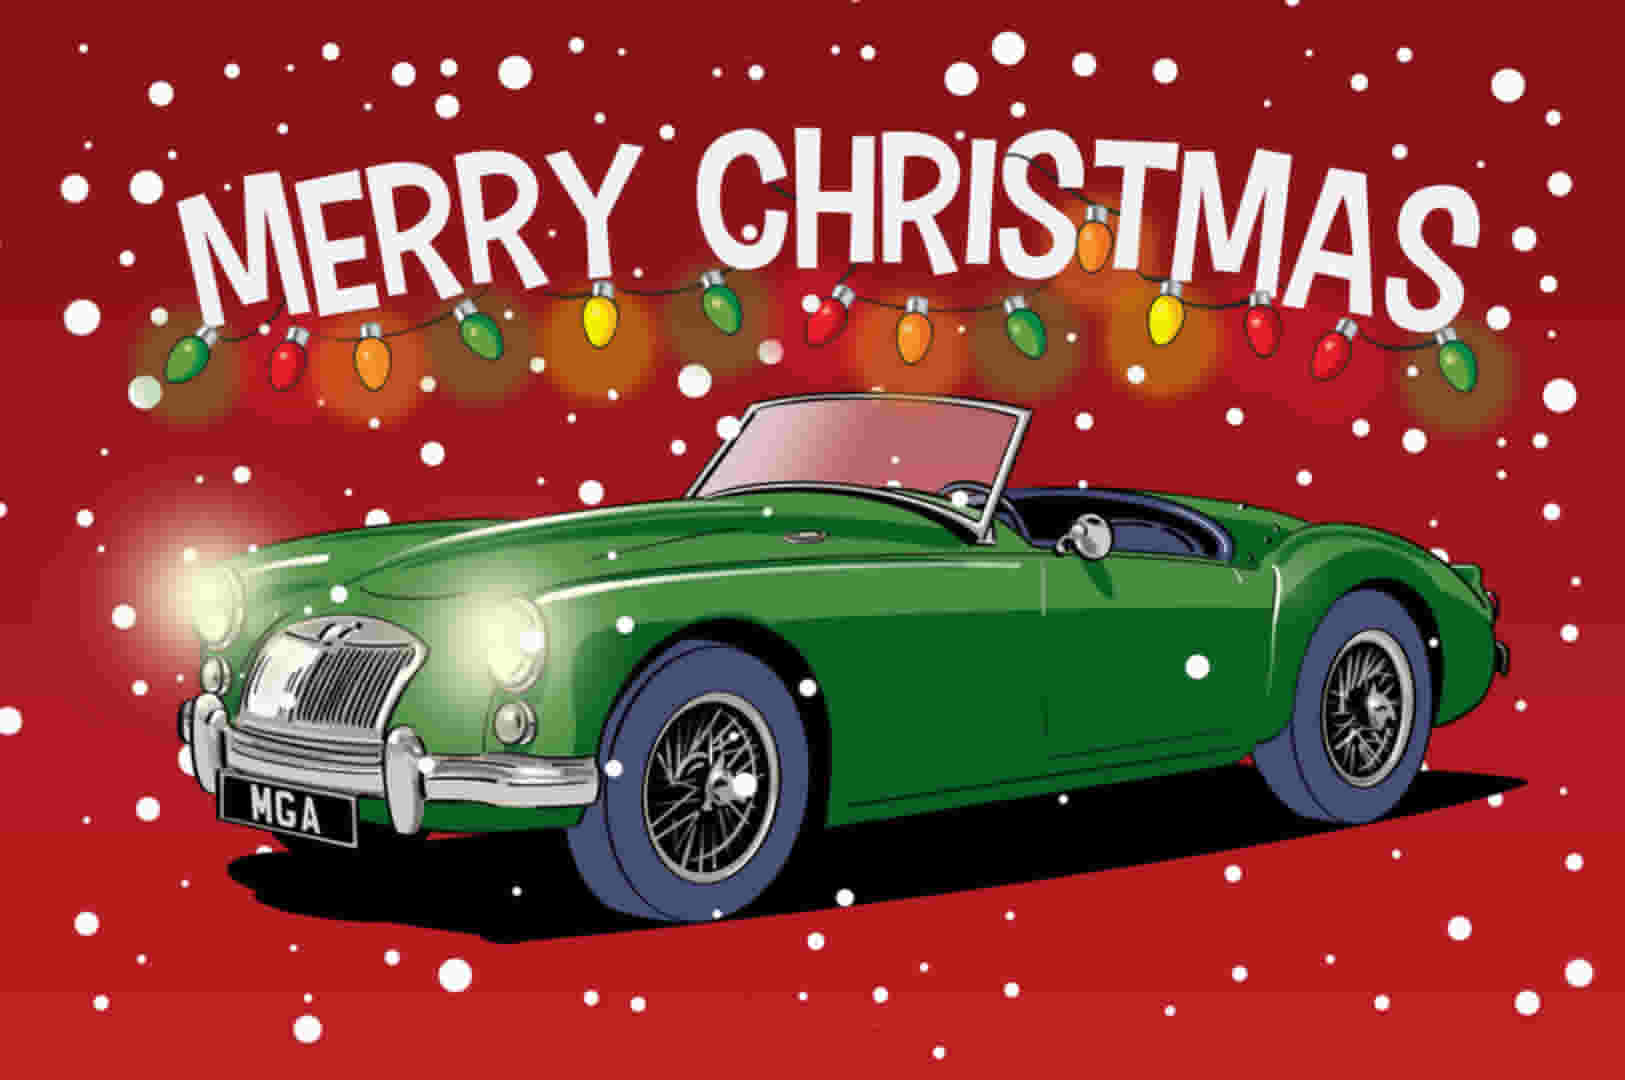 BRG MGA Classic Car Christmas Card